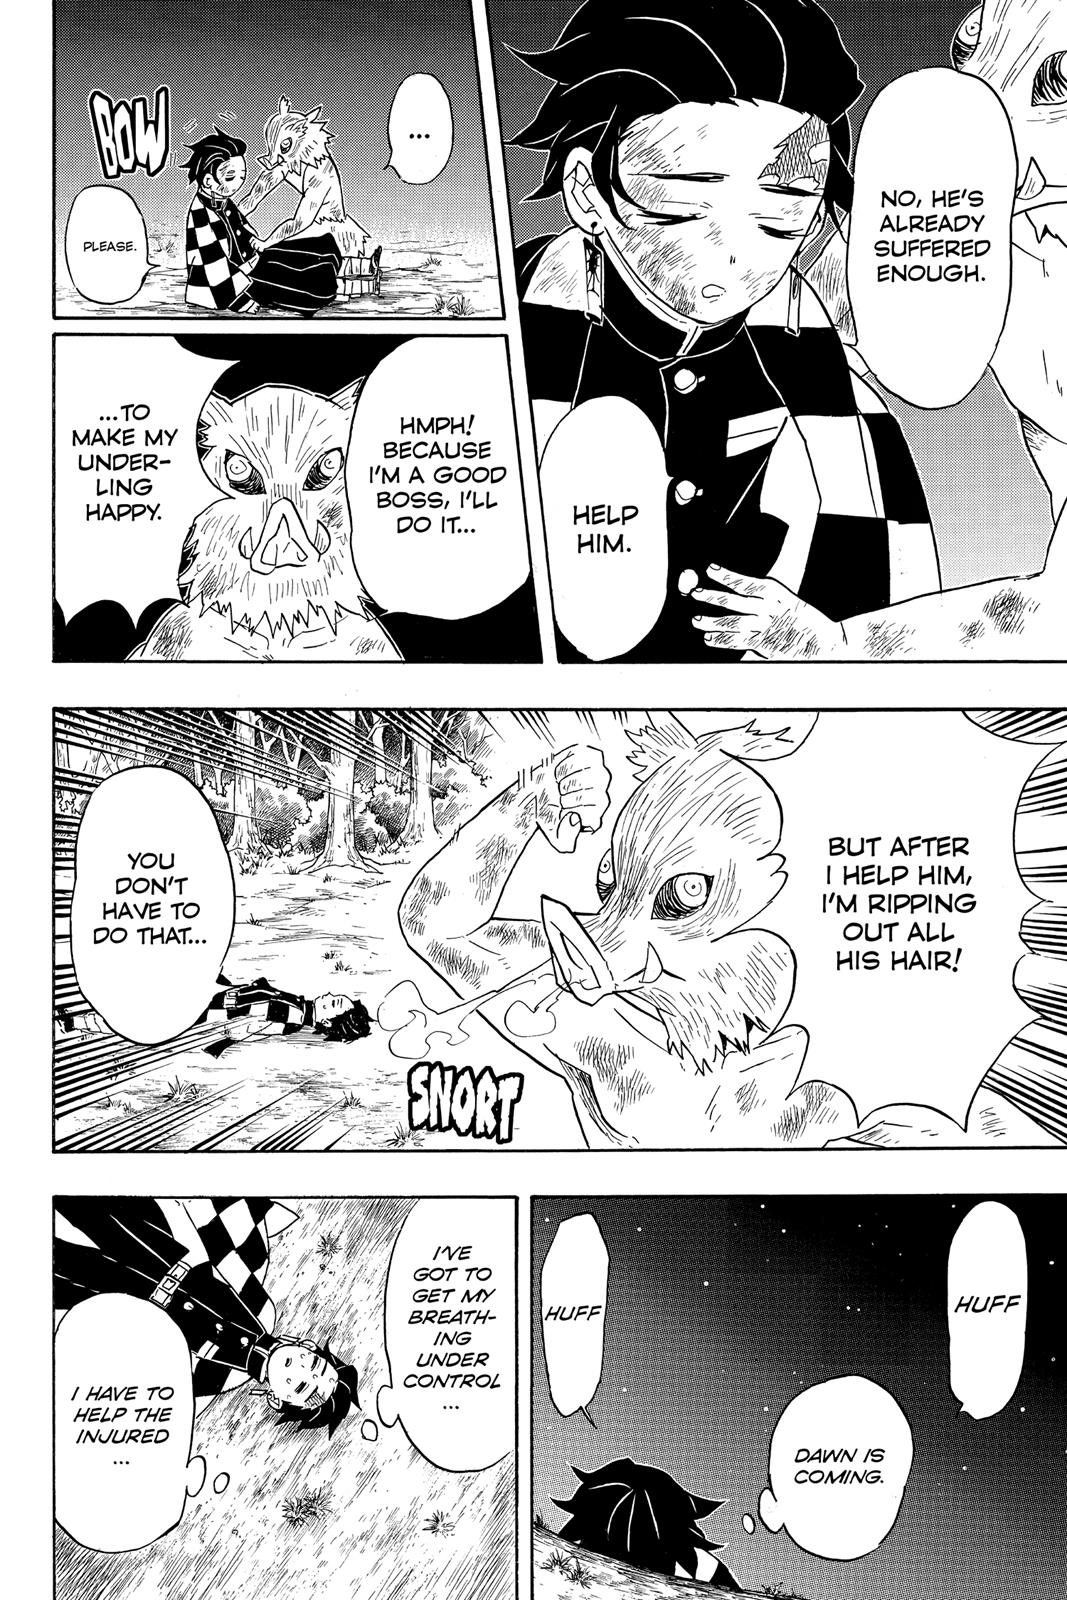 Demon Slayer Manga Manga Chapter - 62 - image 11